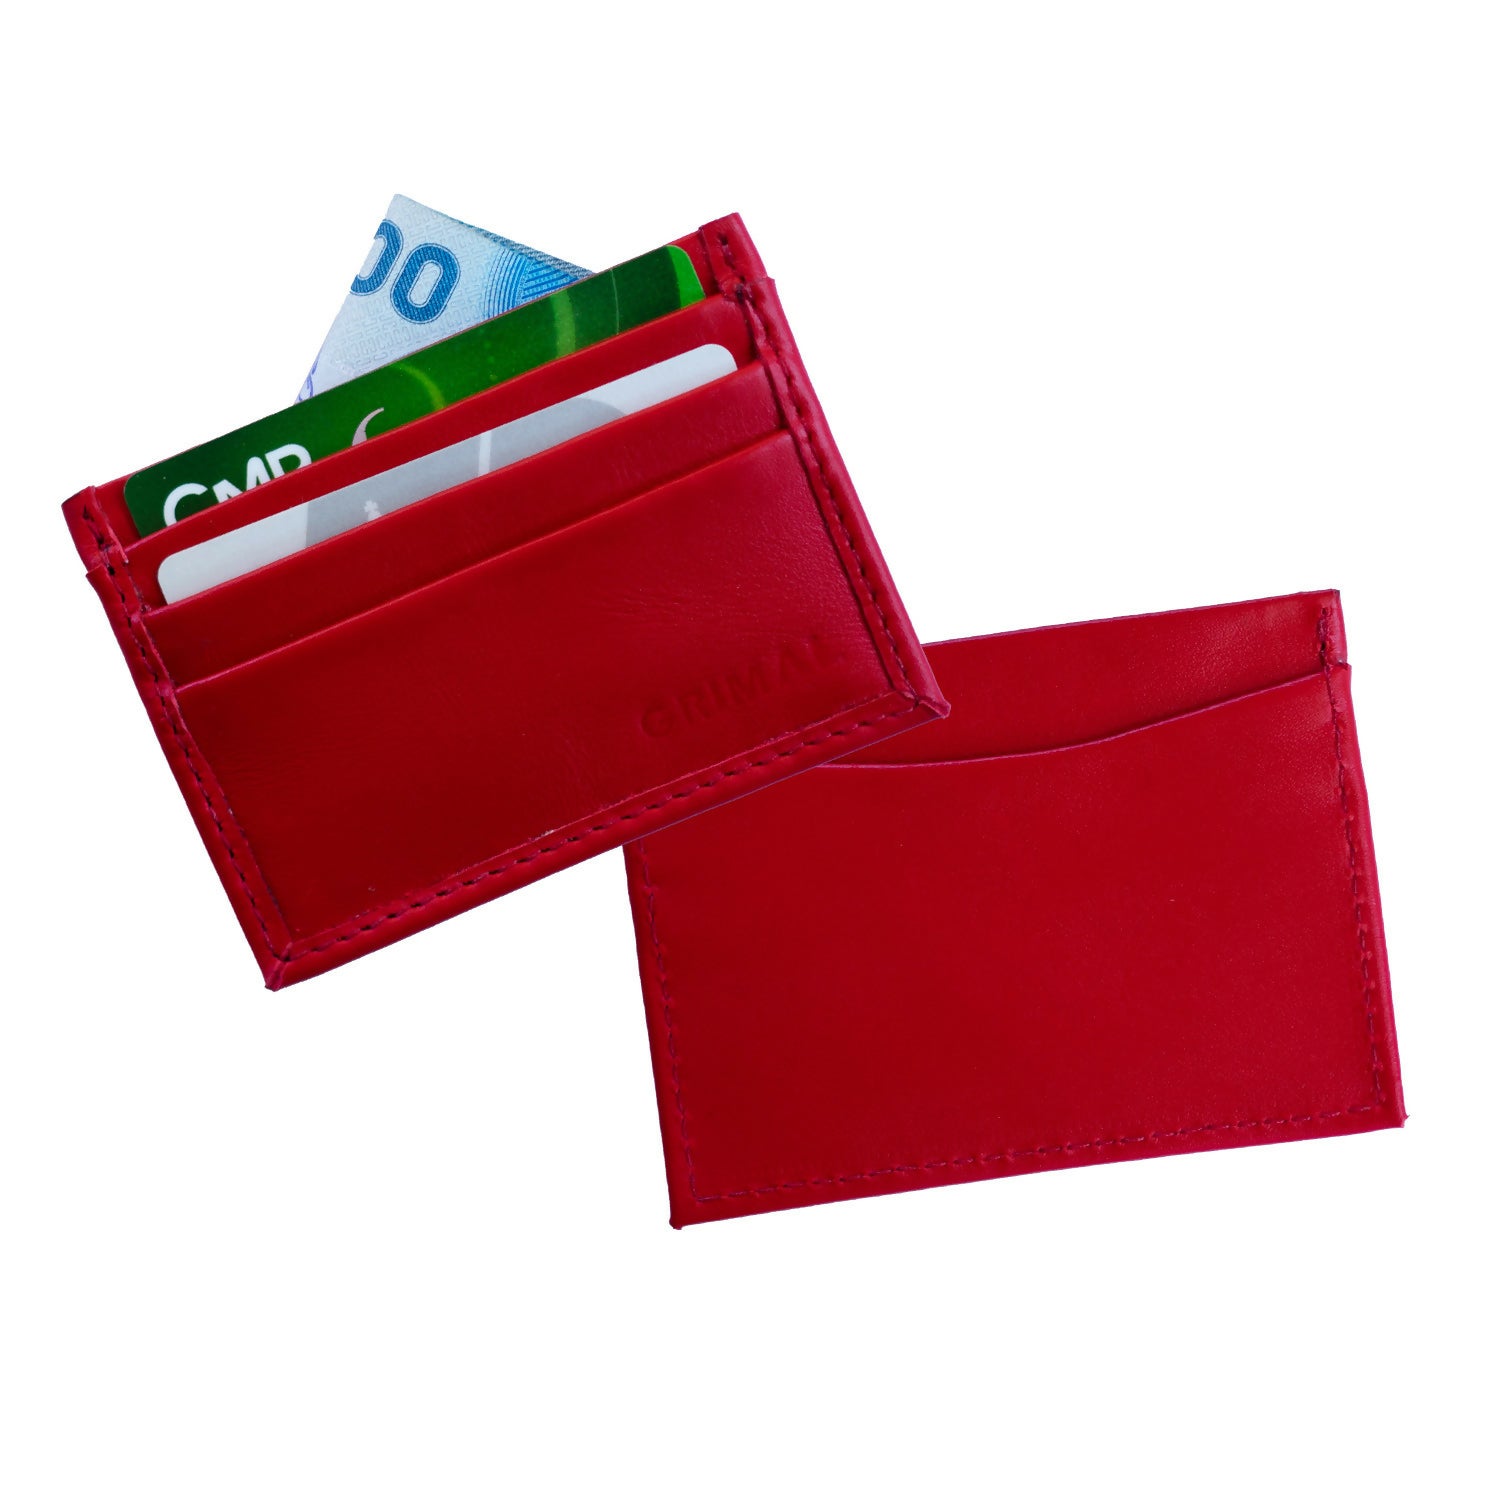 Tarjetero, billetera de cuero roja